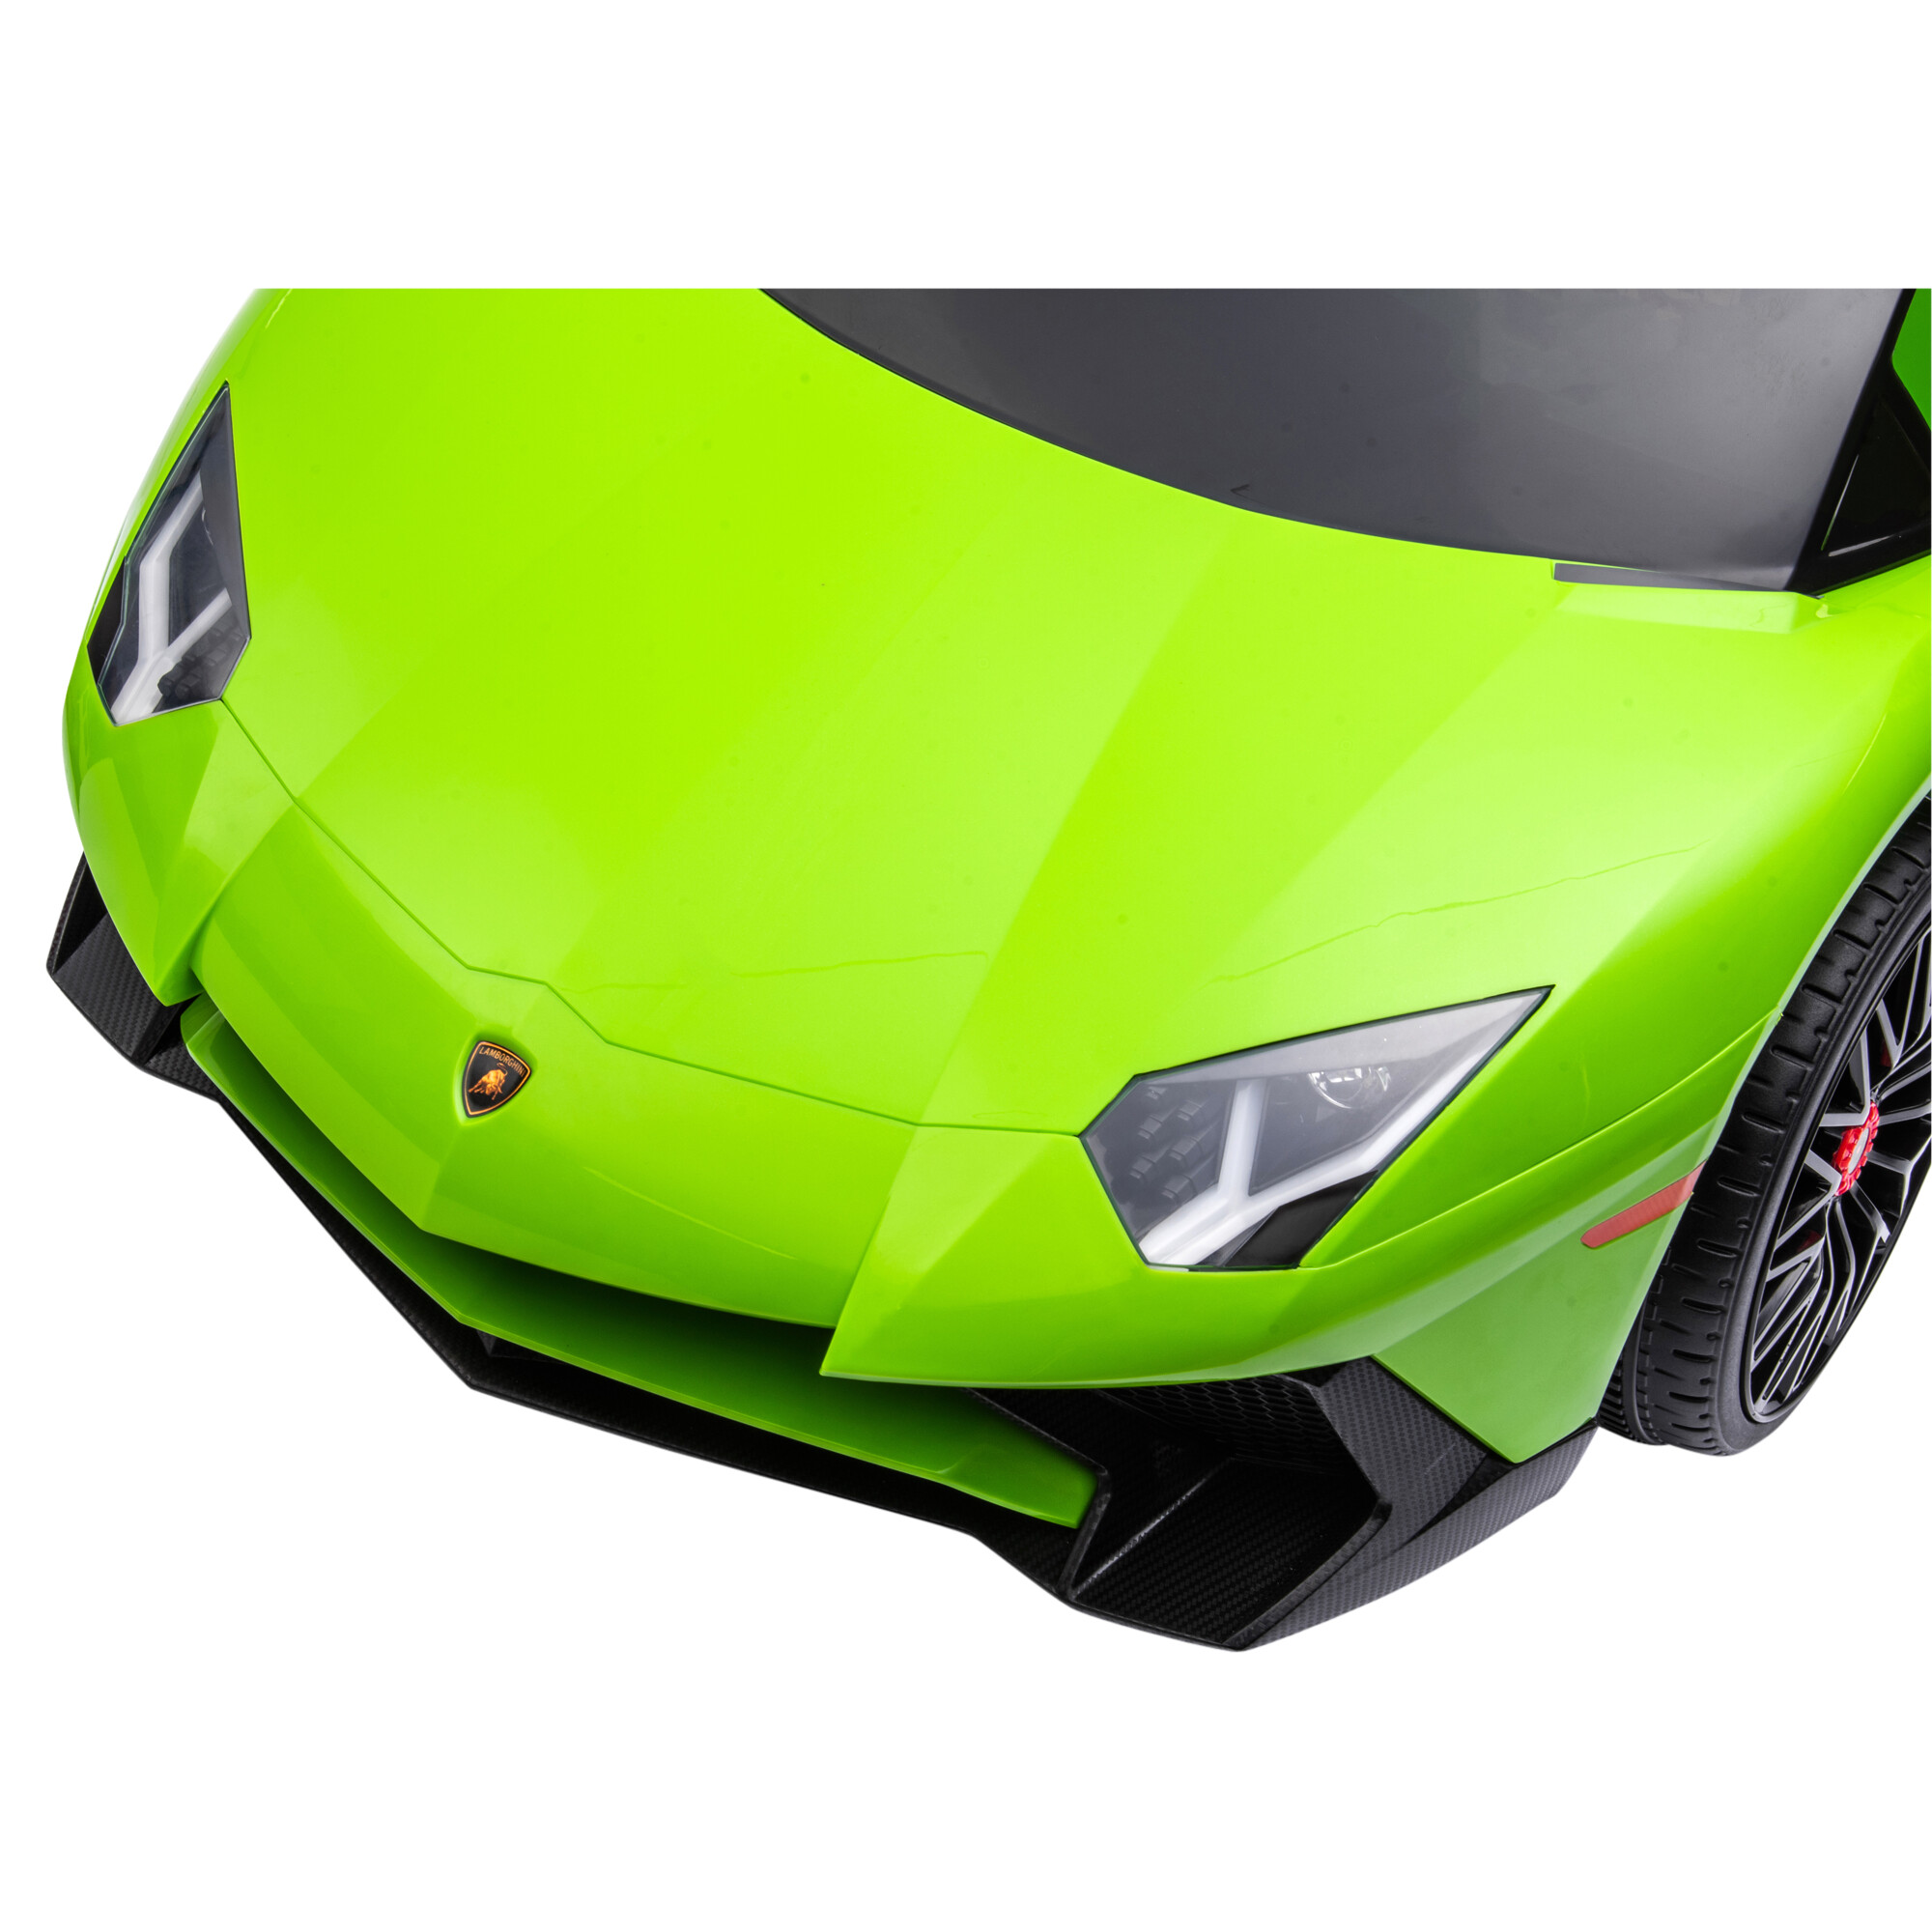 Elbil Lamborghini Aventador, 12V, limegrøn NORDIC PLAY